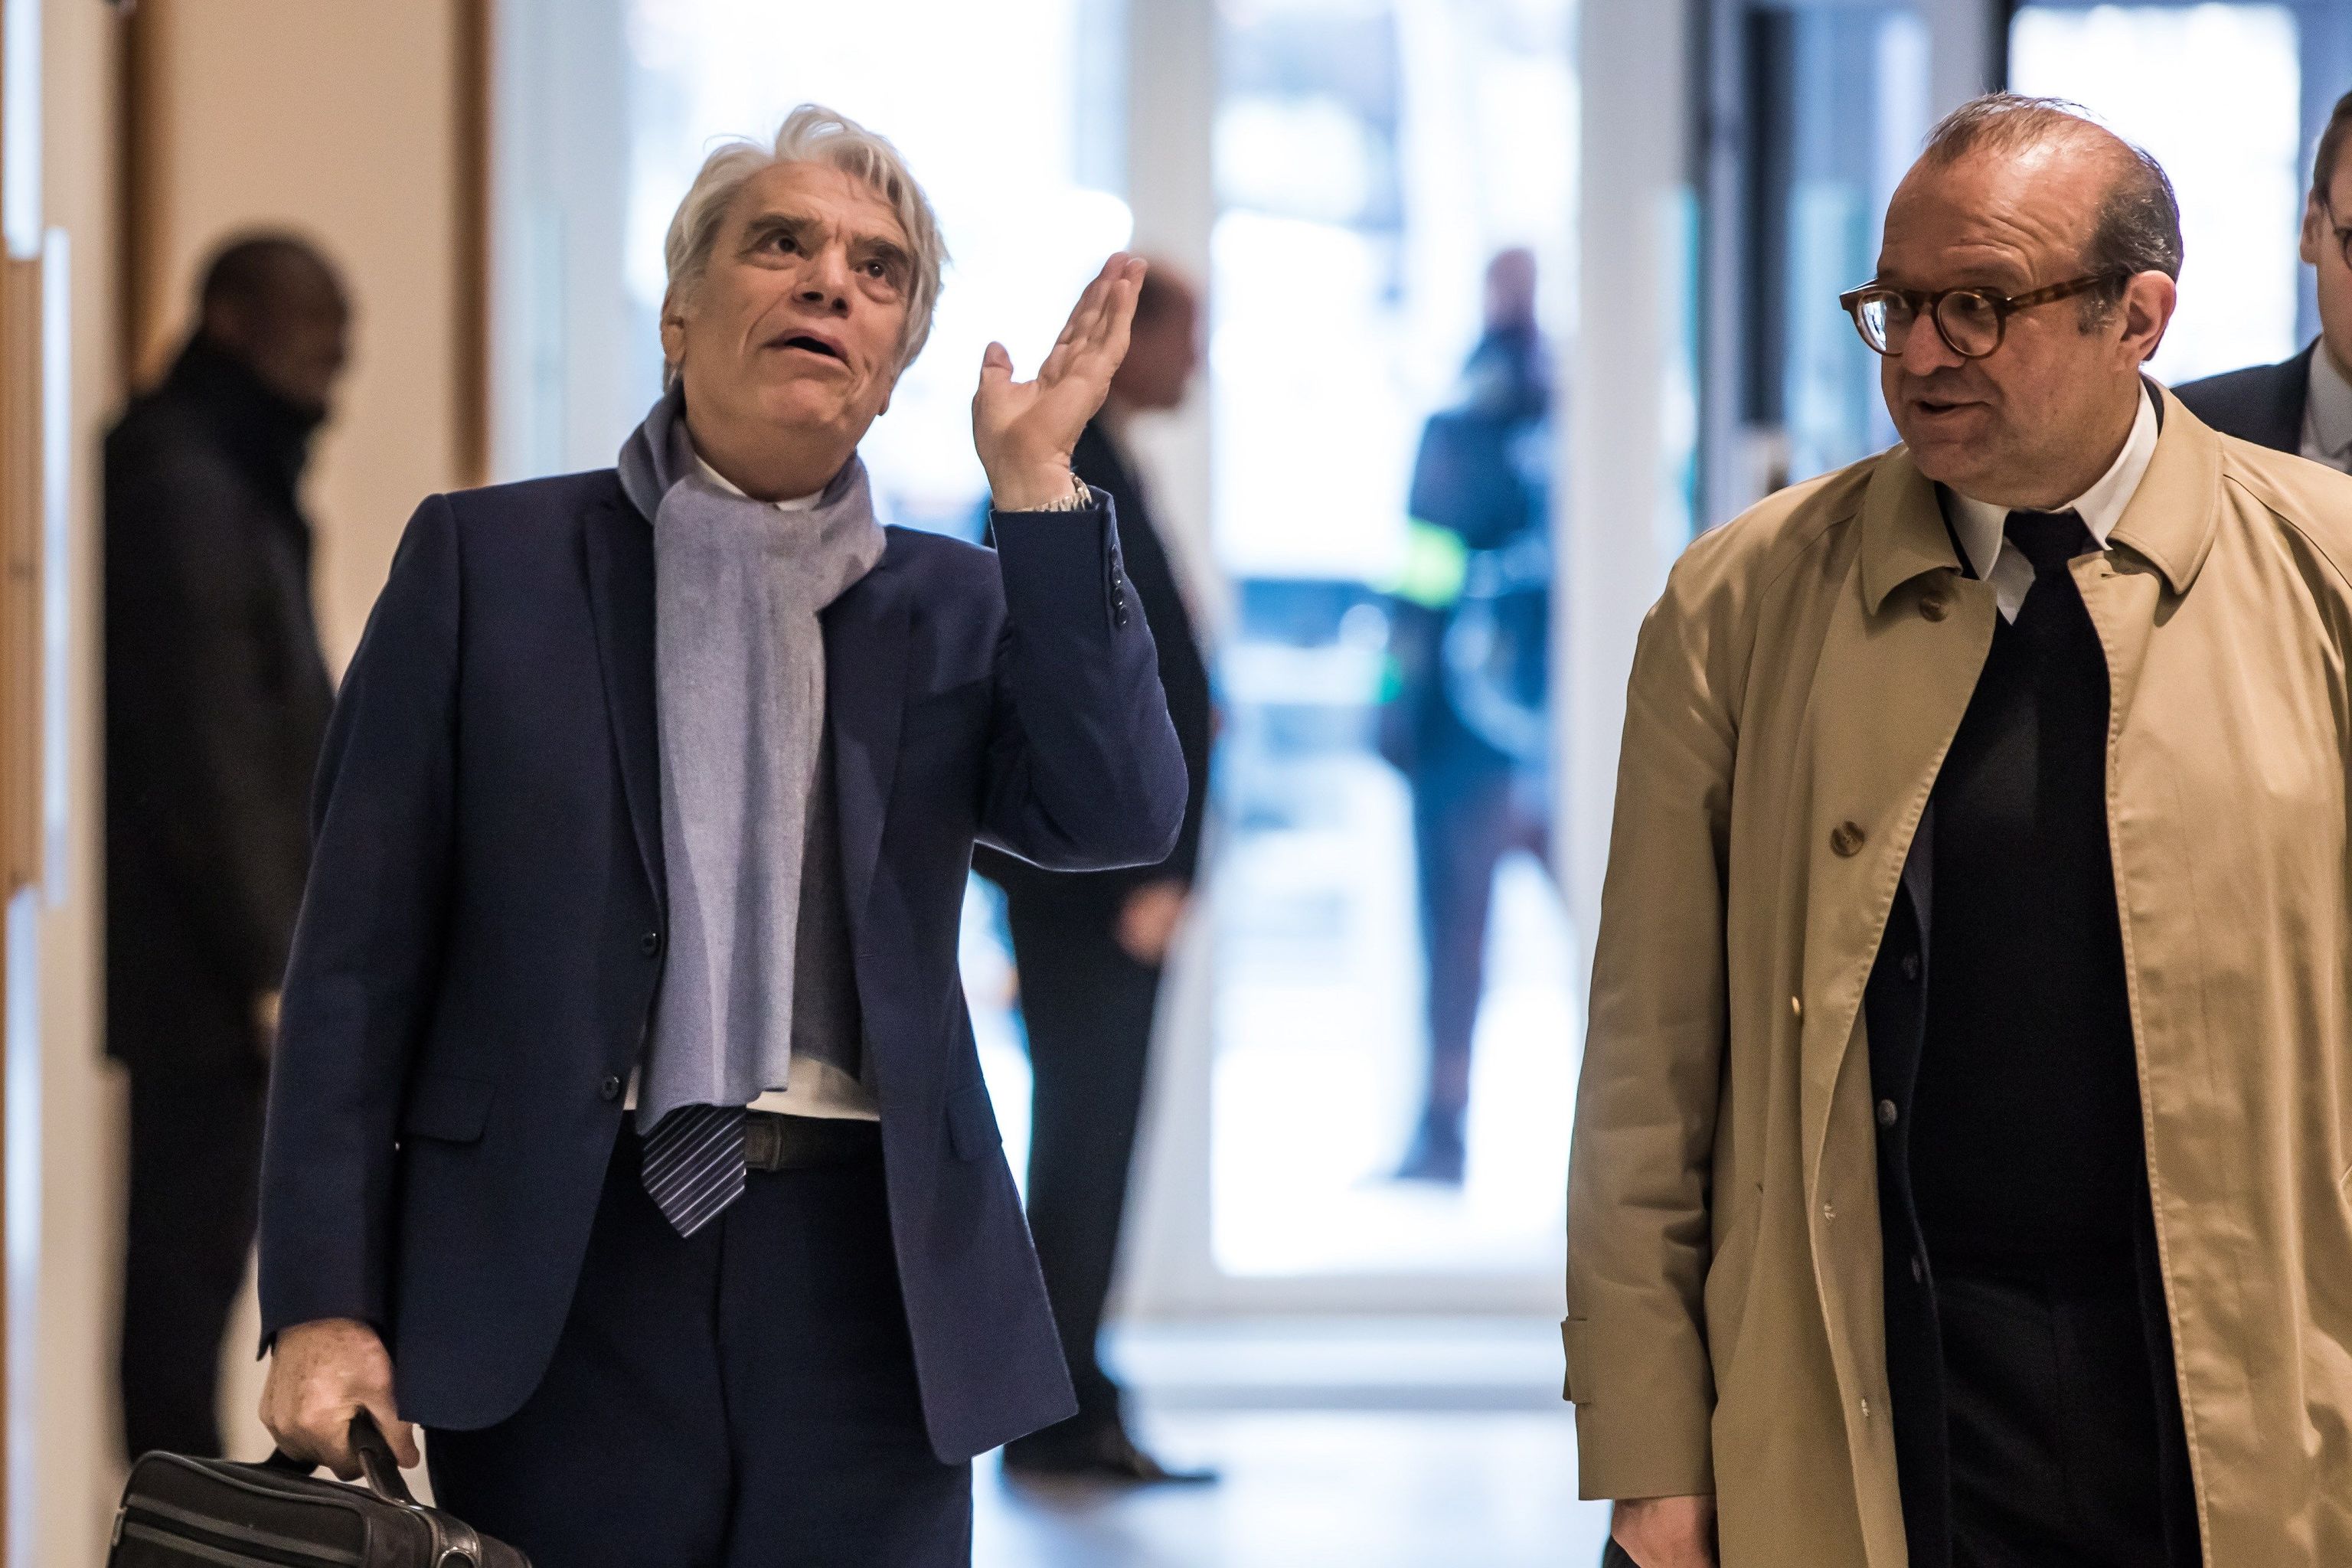 El magnate francés Bernard Tapie (L) y su abogado Herve Temime (R), llegan al tribunal de París para el último día de su juicio, en París, Francia, 04 de abril de 2019 (reeditado 09 de julio de 2019).